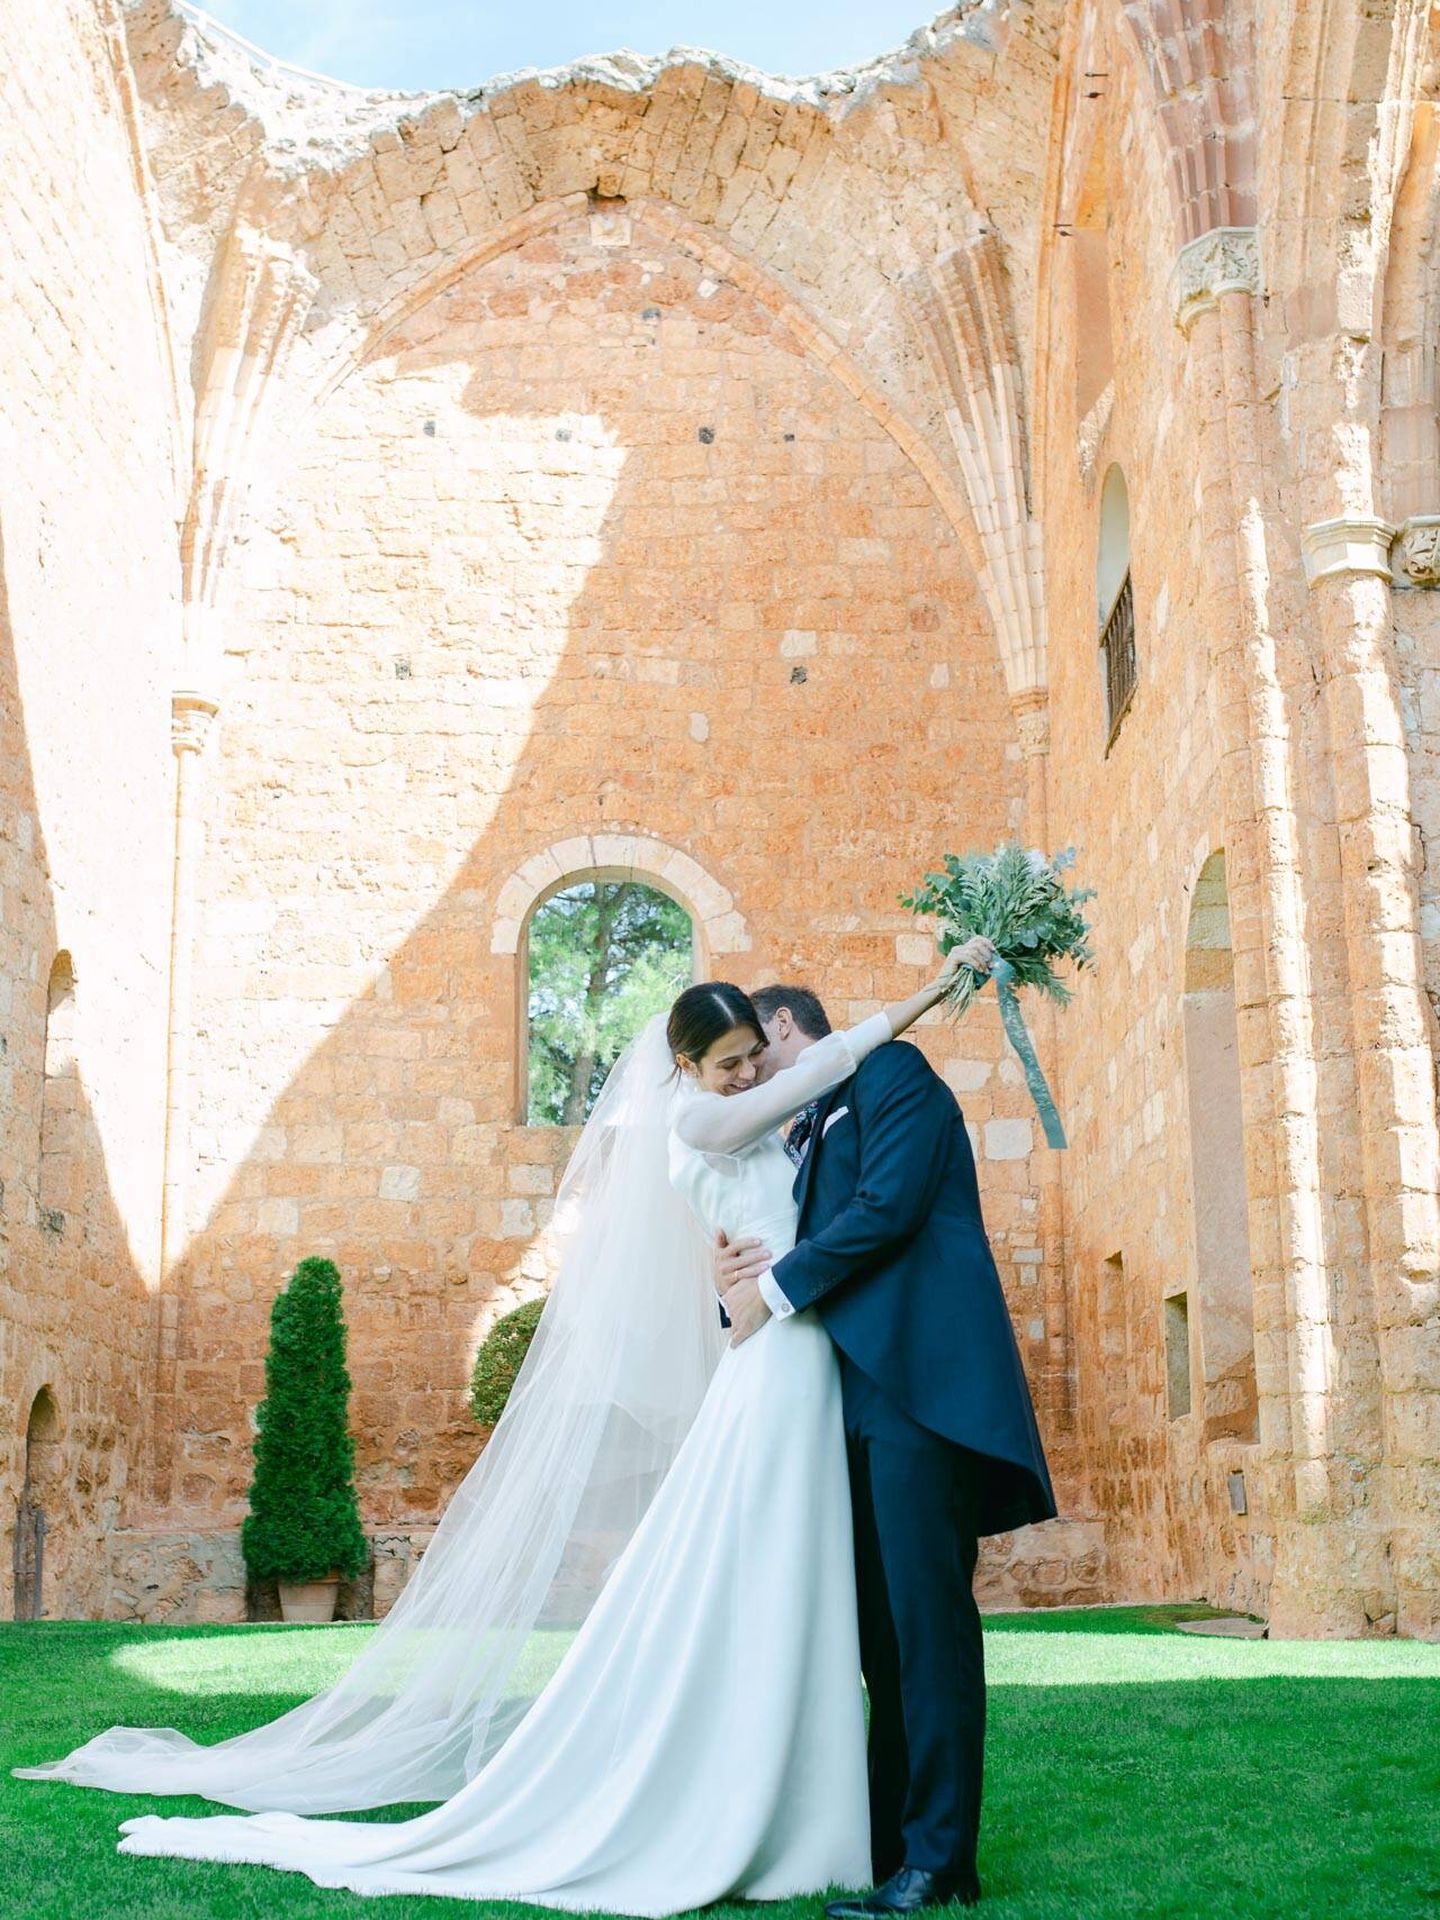 La boda de Marta y Fernando en Segovia. (Lazarina Weddings)